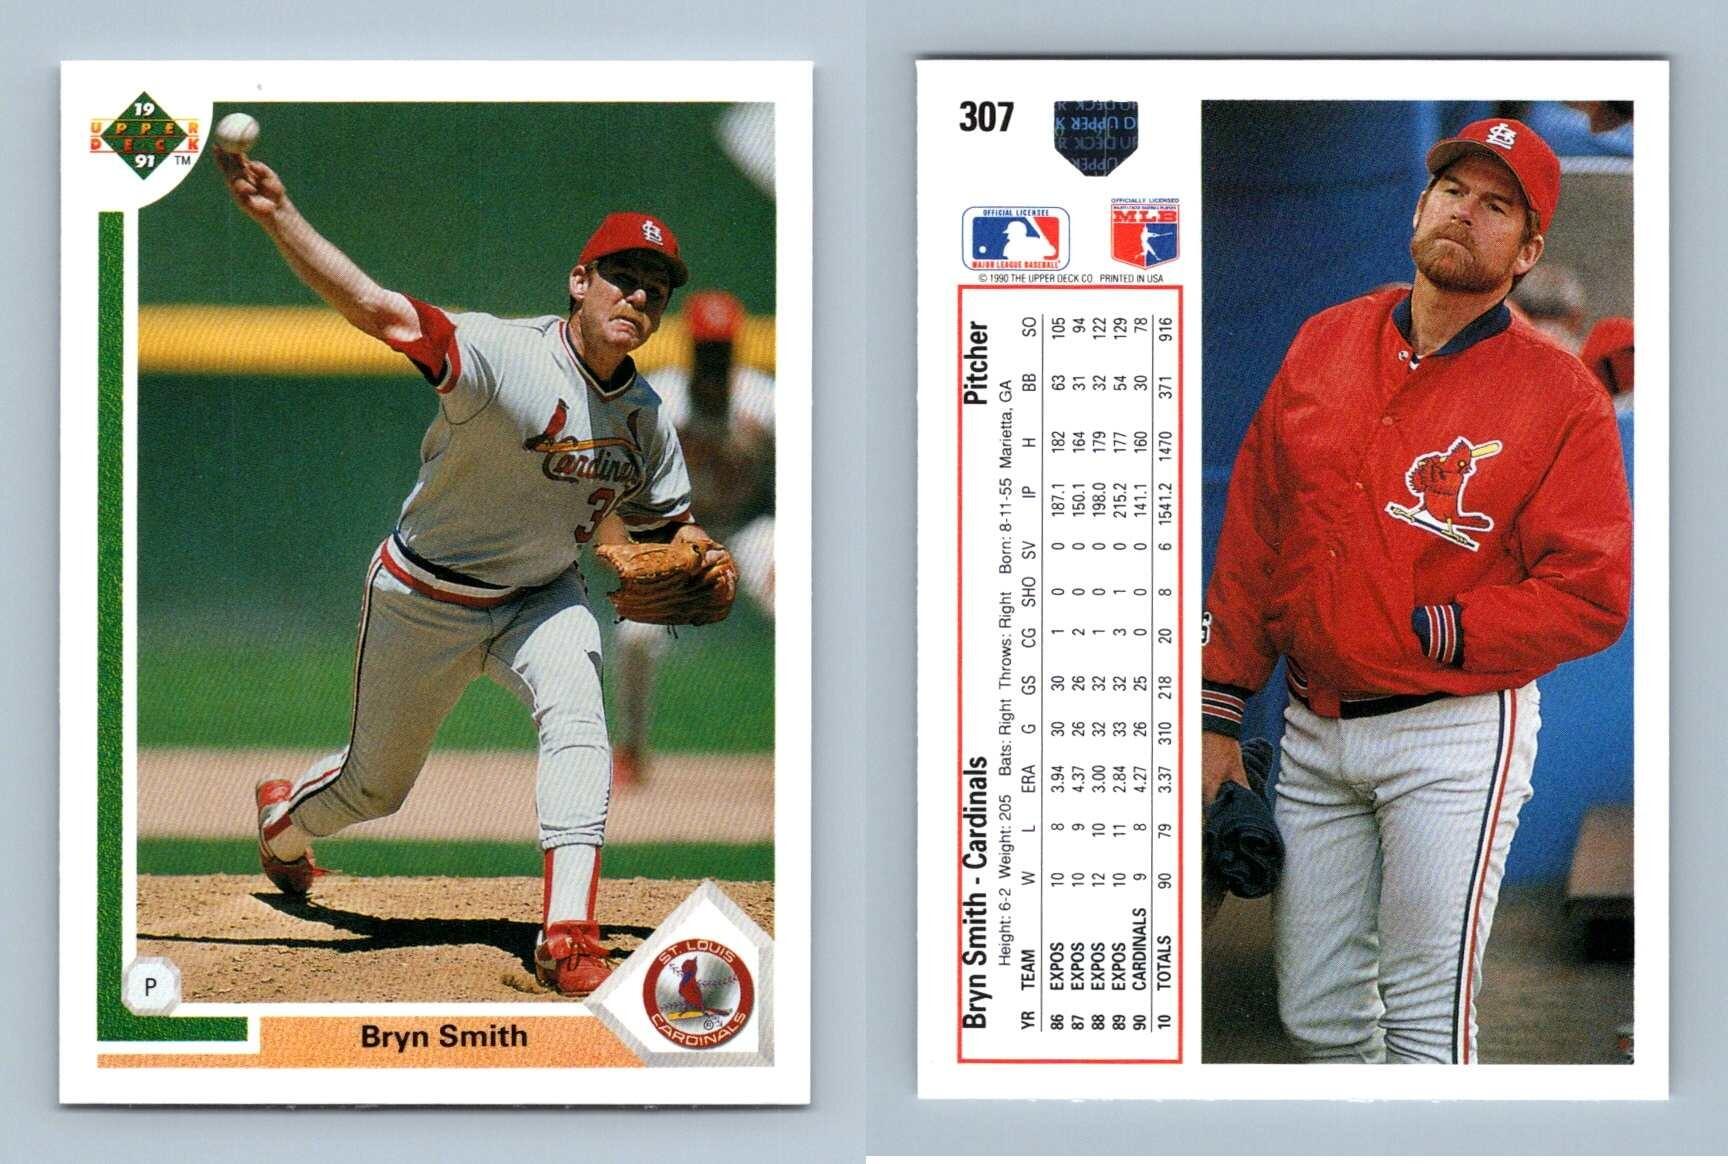  1991 Upper Deck Baseball Card #453 Pete Incaviglia